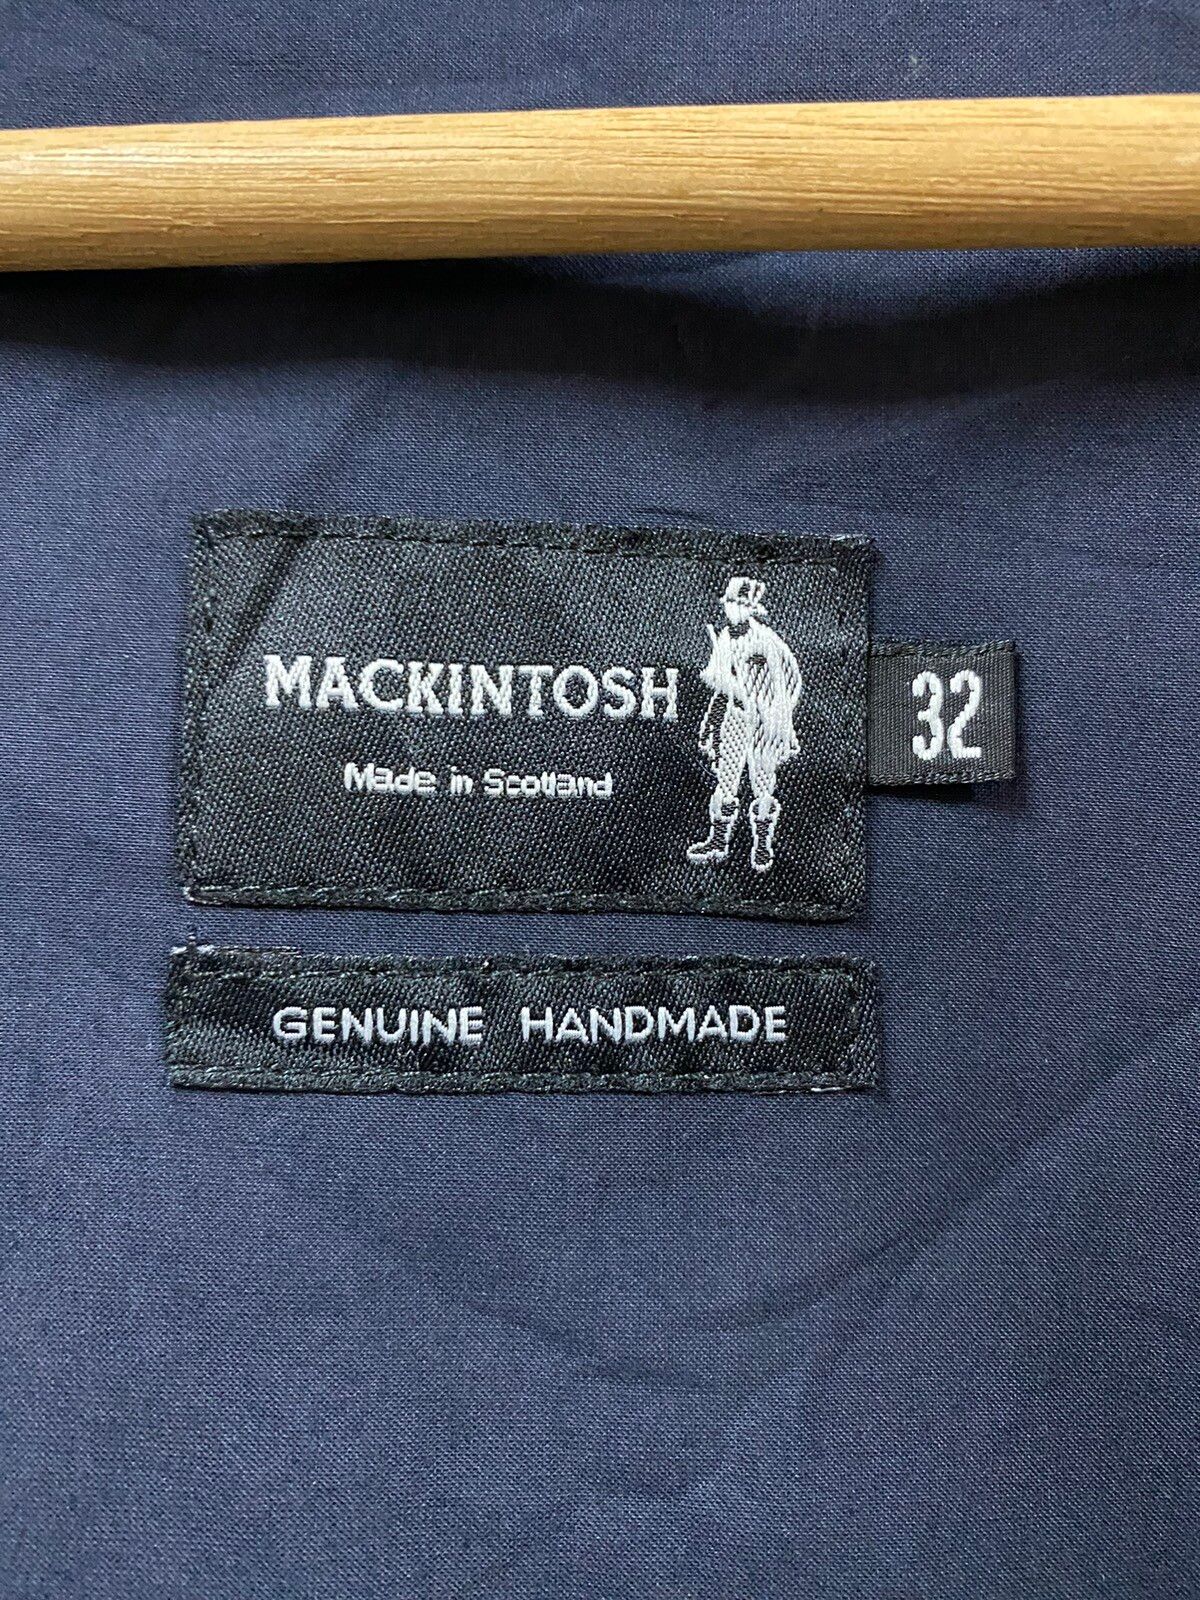 Mackintosh Genuine Handmade Trenchcoat Belted Jacket - 19